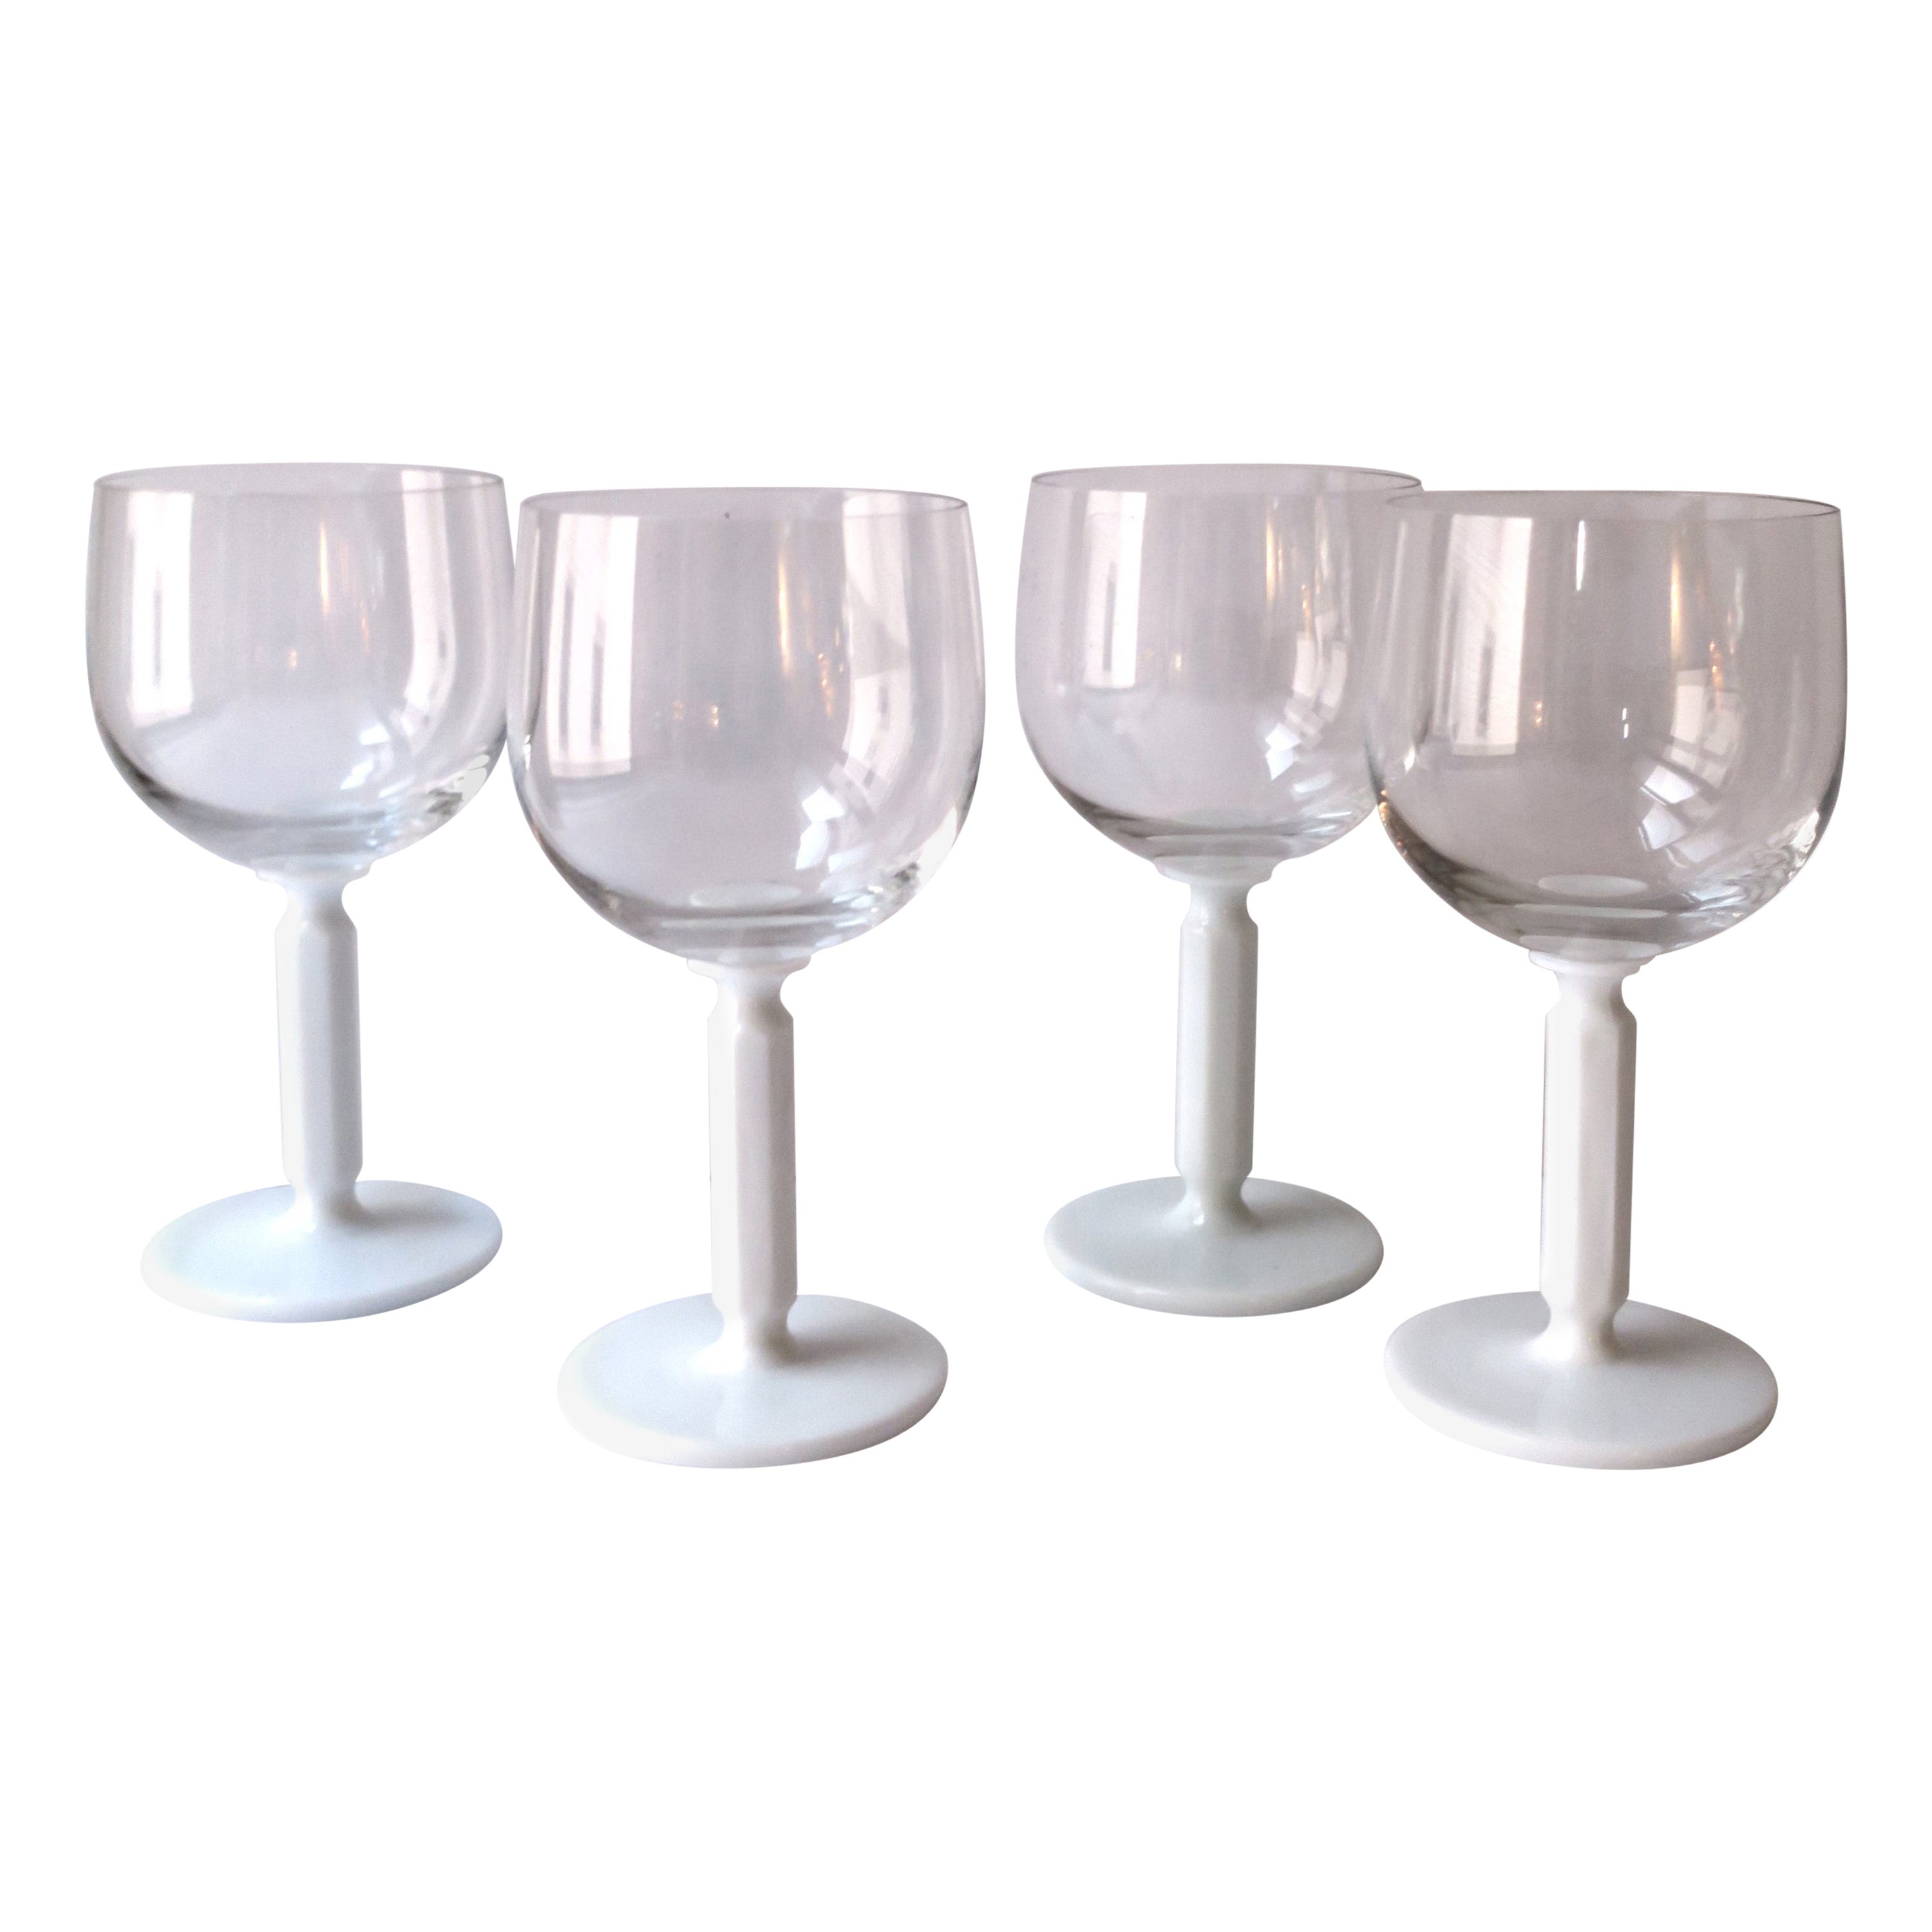 Rosenthal Studio-Line Wein- oder Cocktailgläser mit weißem Glassstiel, 4er-Set